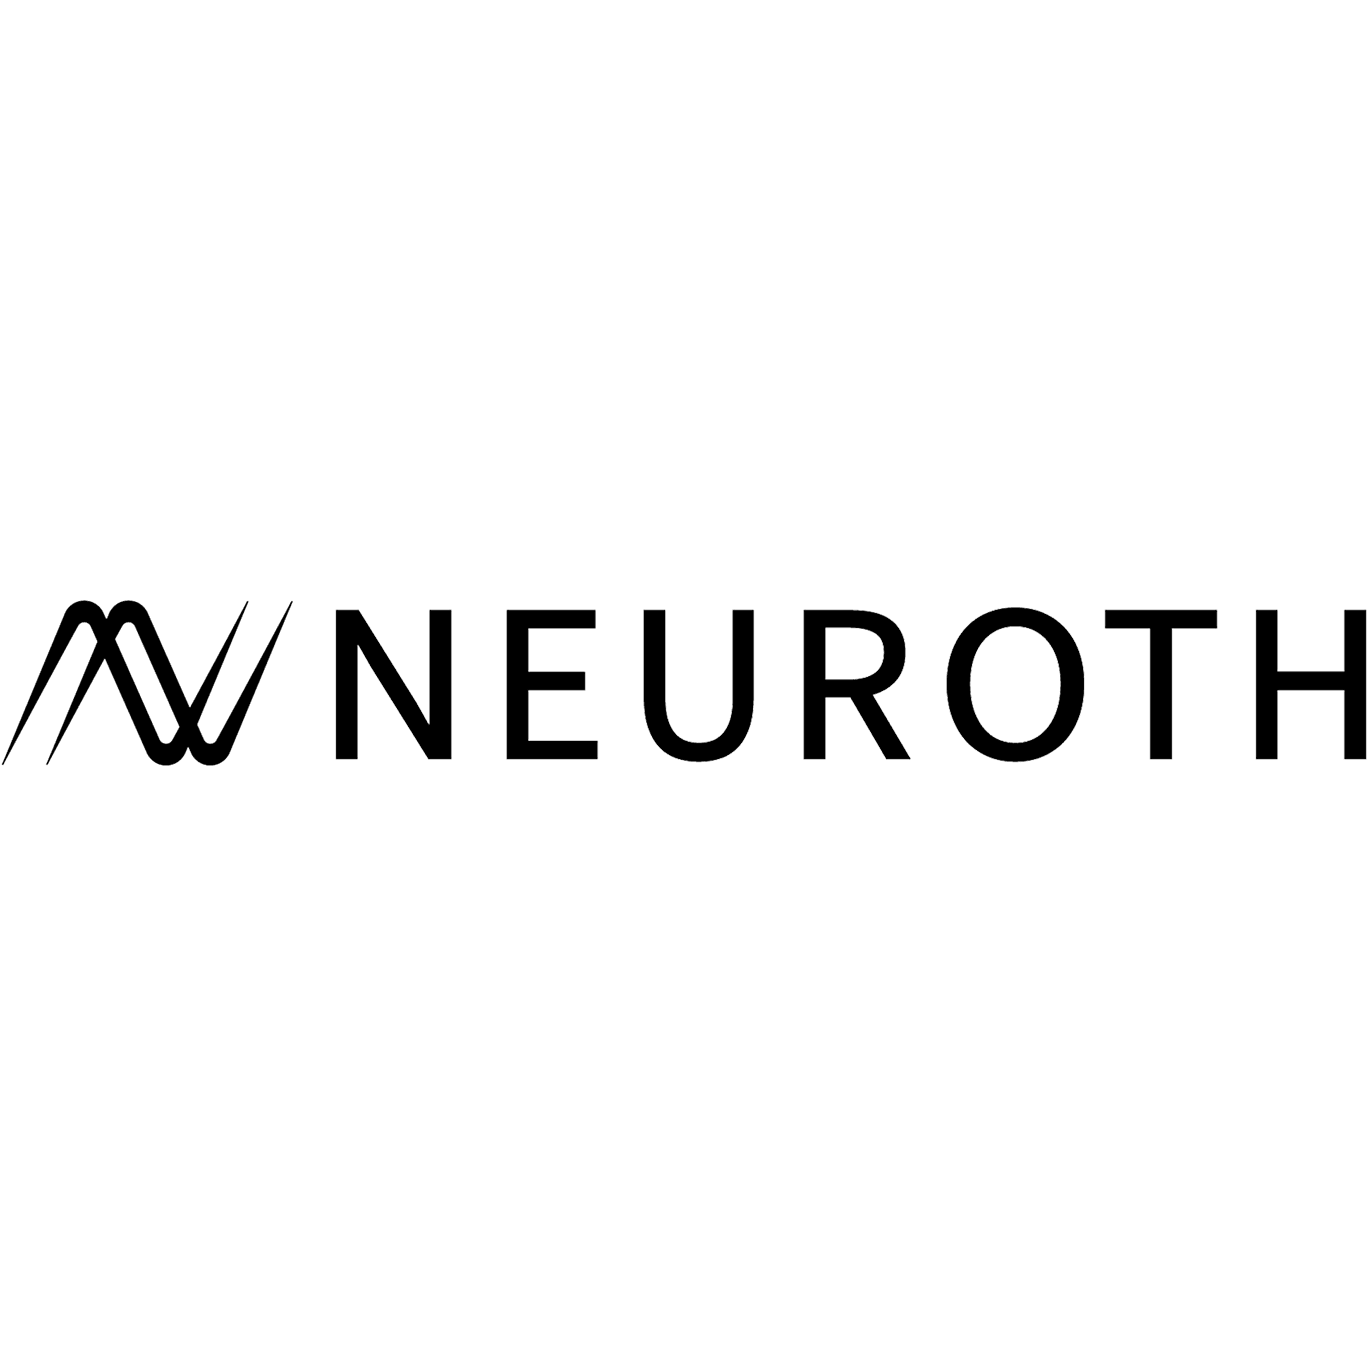 Neuroth-Logo auf blauem Hintergrund.